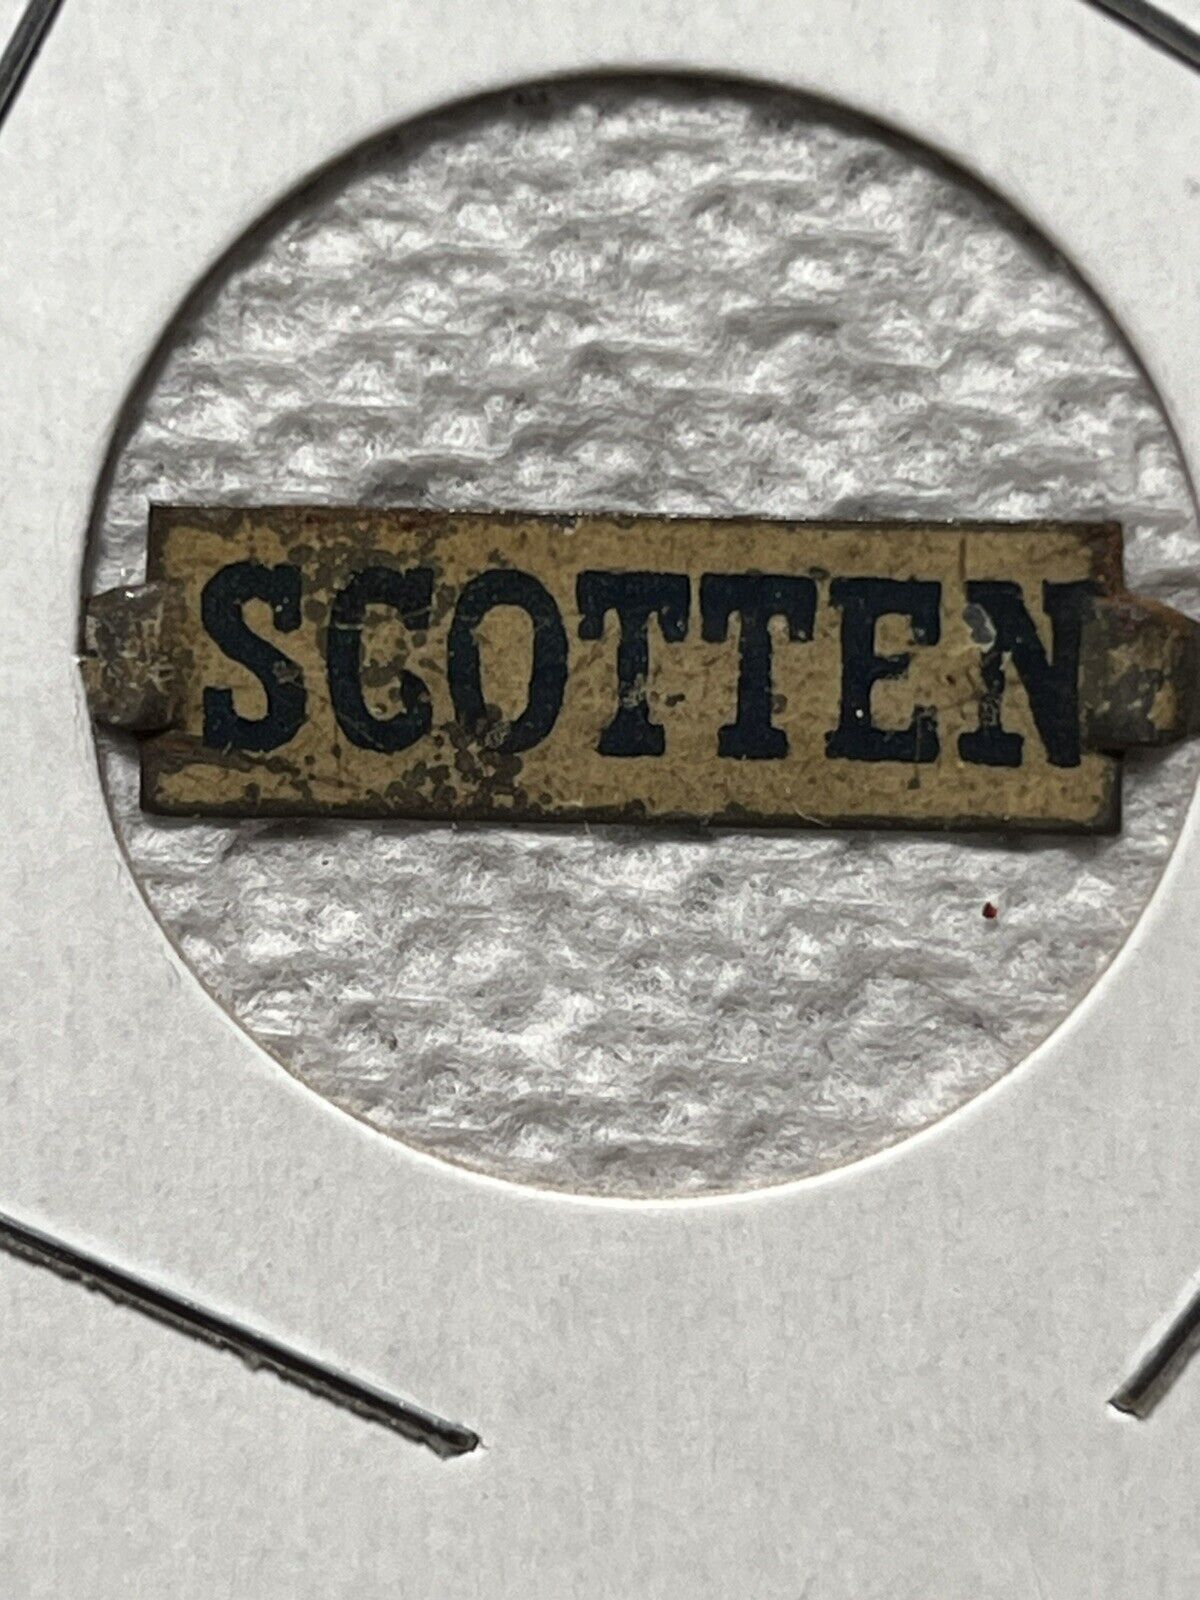 Scotten vintage tin tobacco tag